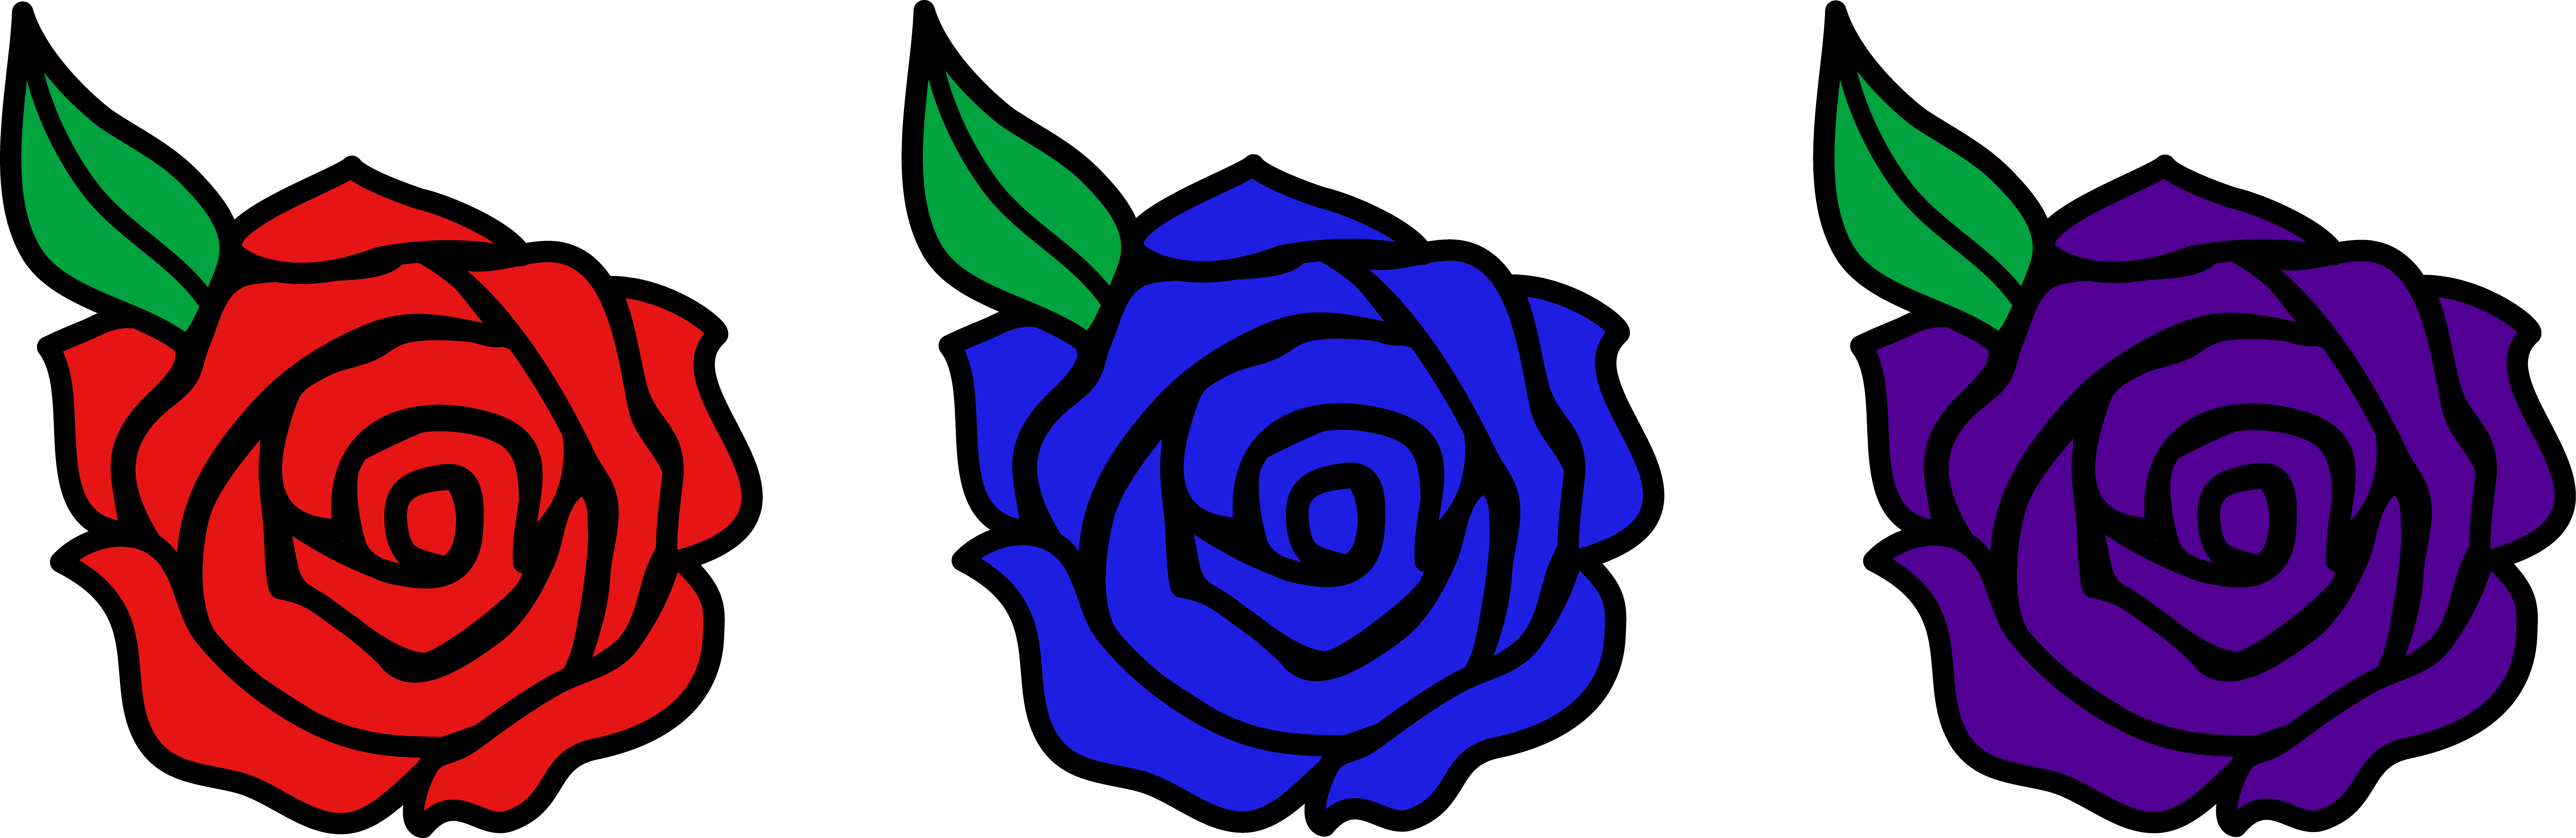 Flower Cartoon Rose (7560x2458)